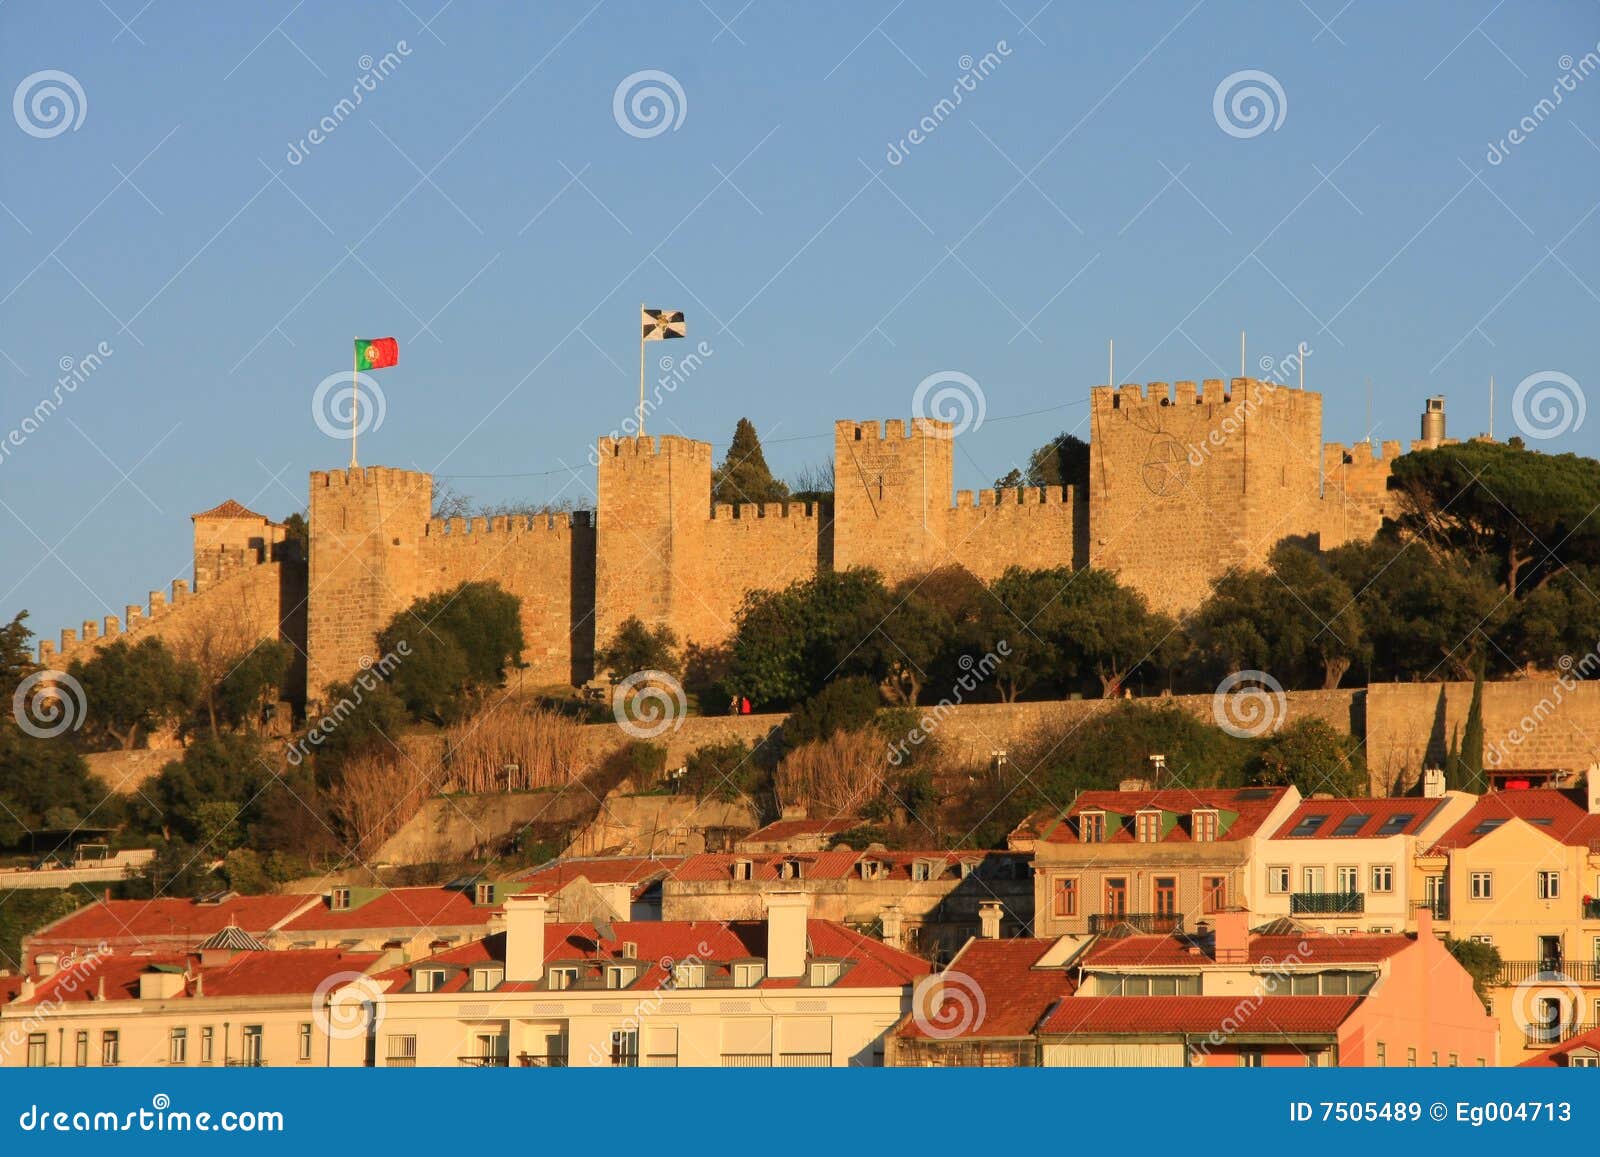 castle of lisbon